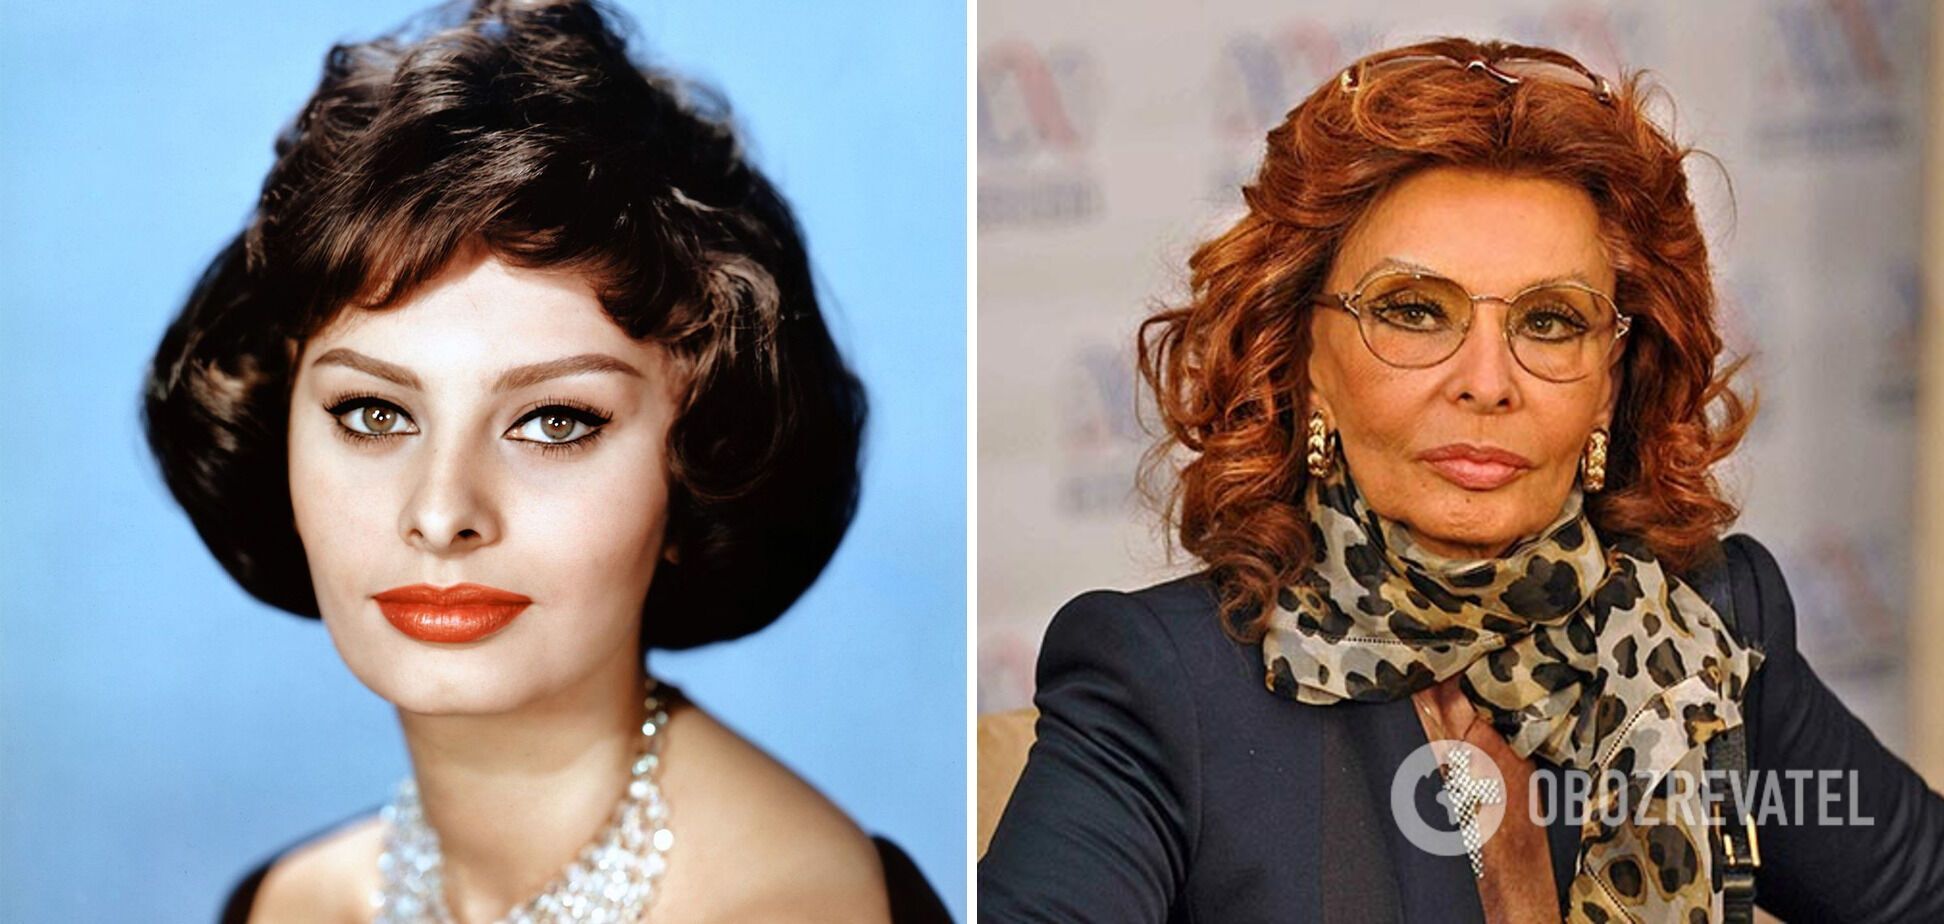 Sophia Loren's name is Sophia.